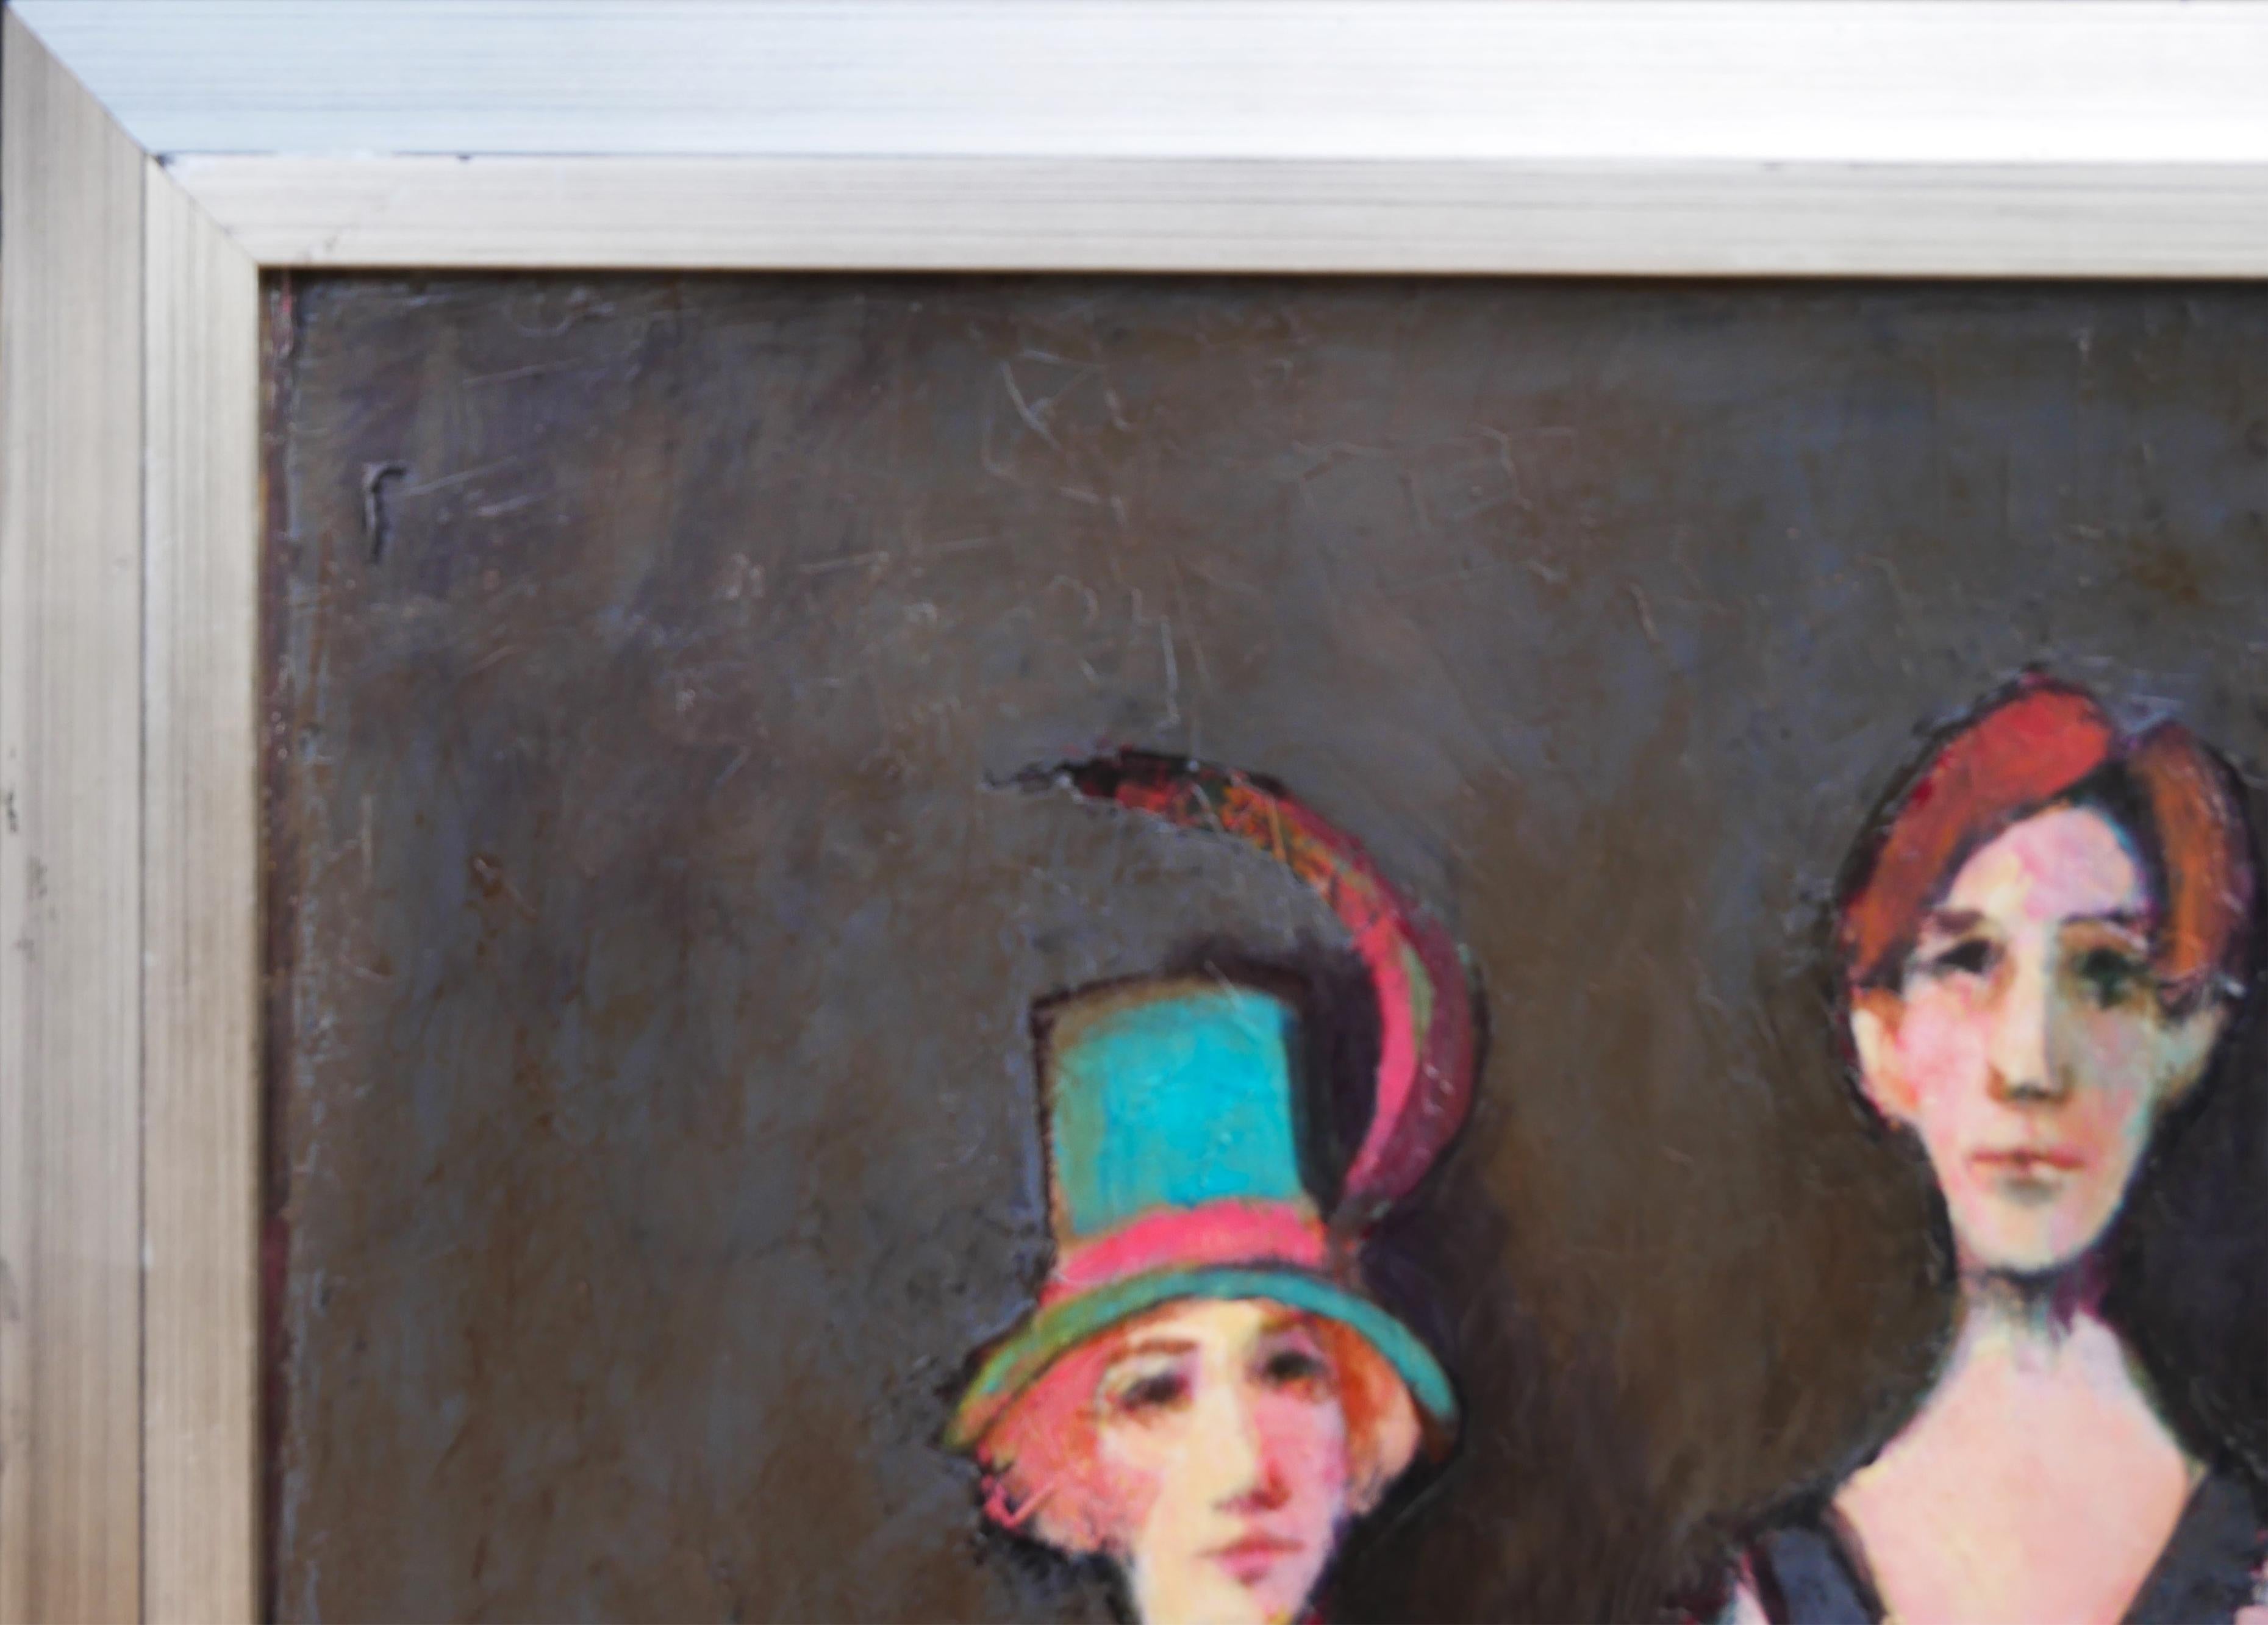 Portrait abstrait moderne et figuratif réalisé par l'artiste David Adickes, de Houston, au Texas. L'œuvre présente deux personnages masculins (dont l'un tient une guitare) et une femme portant un bonnet blanc et assise sur une chaise bleue. Signé